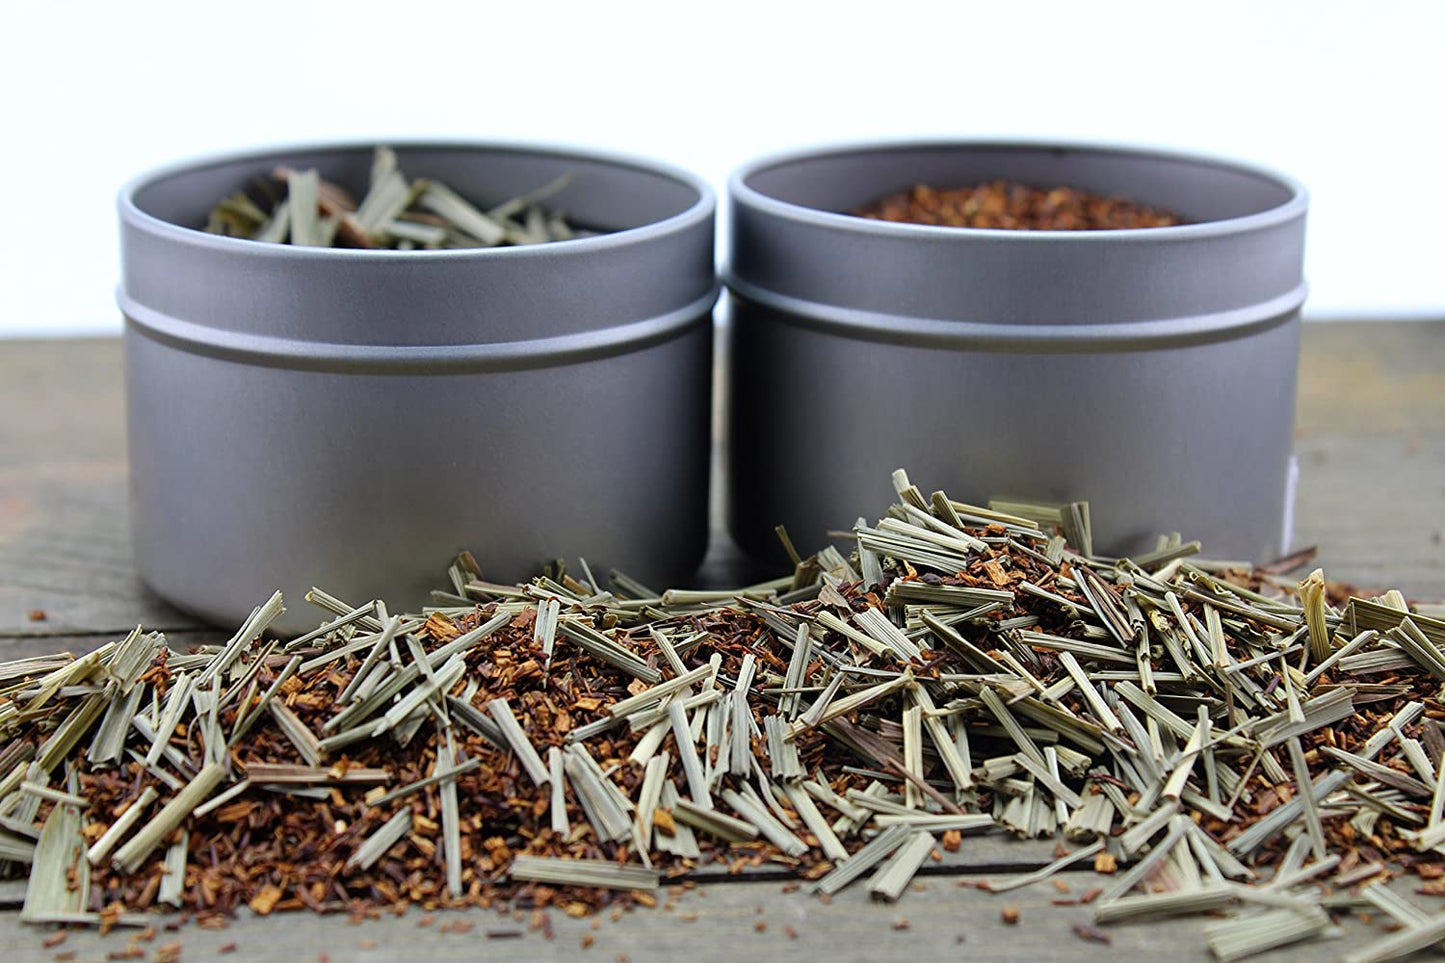 Loose Leaf Tea Sampler Gift Set Create Your Own Tea Blend